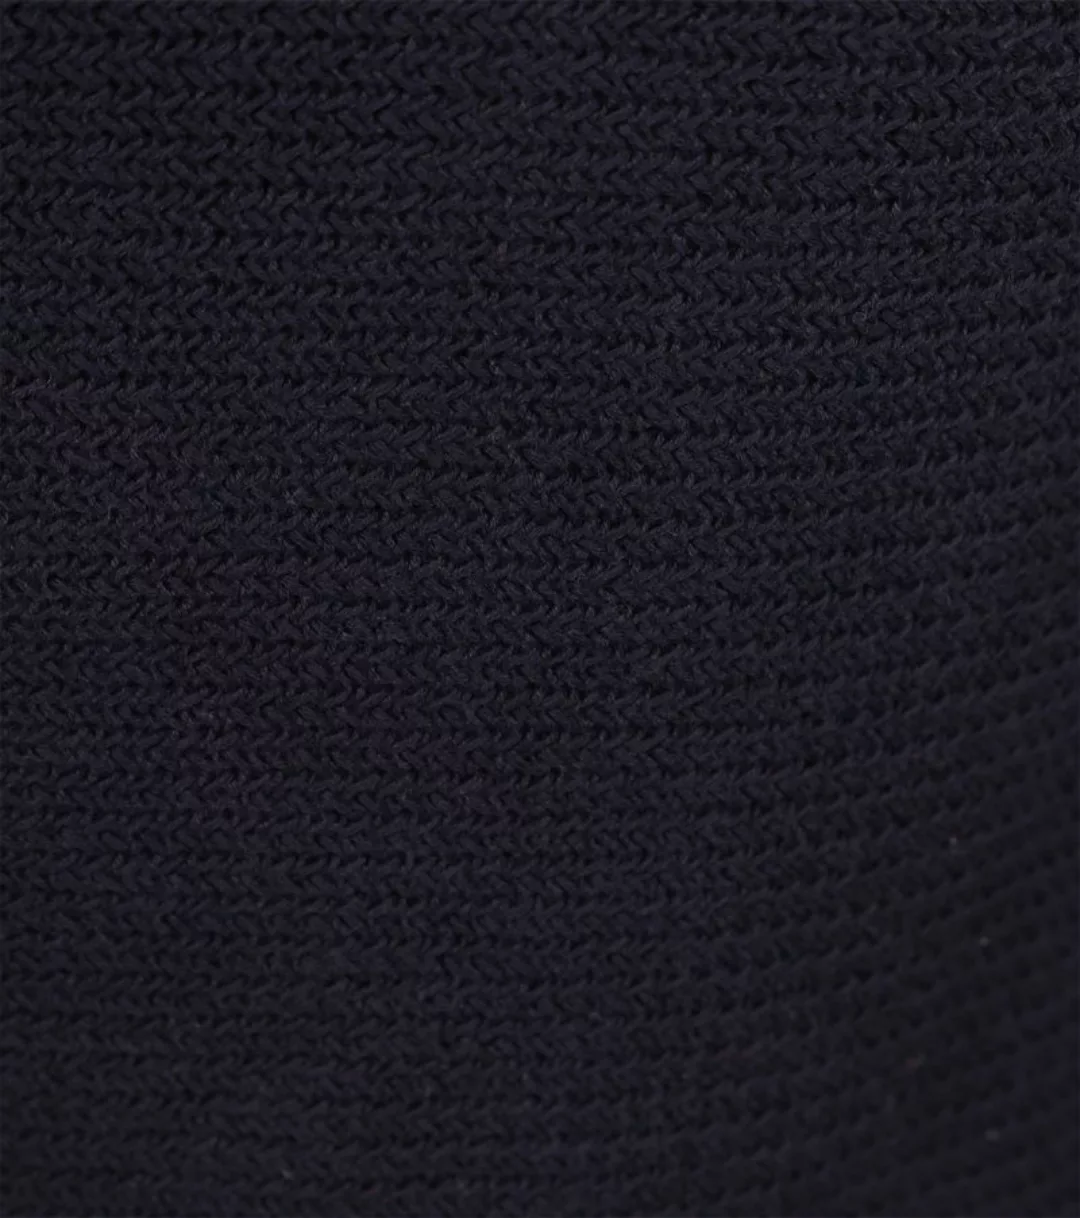 Marc O'Polo Halfzip Pullover Blau - Größe XL günstig online kaufen